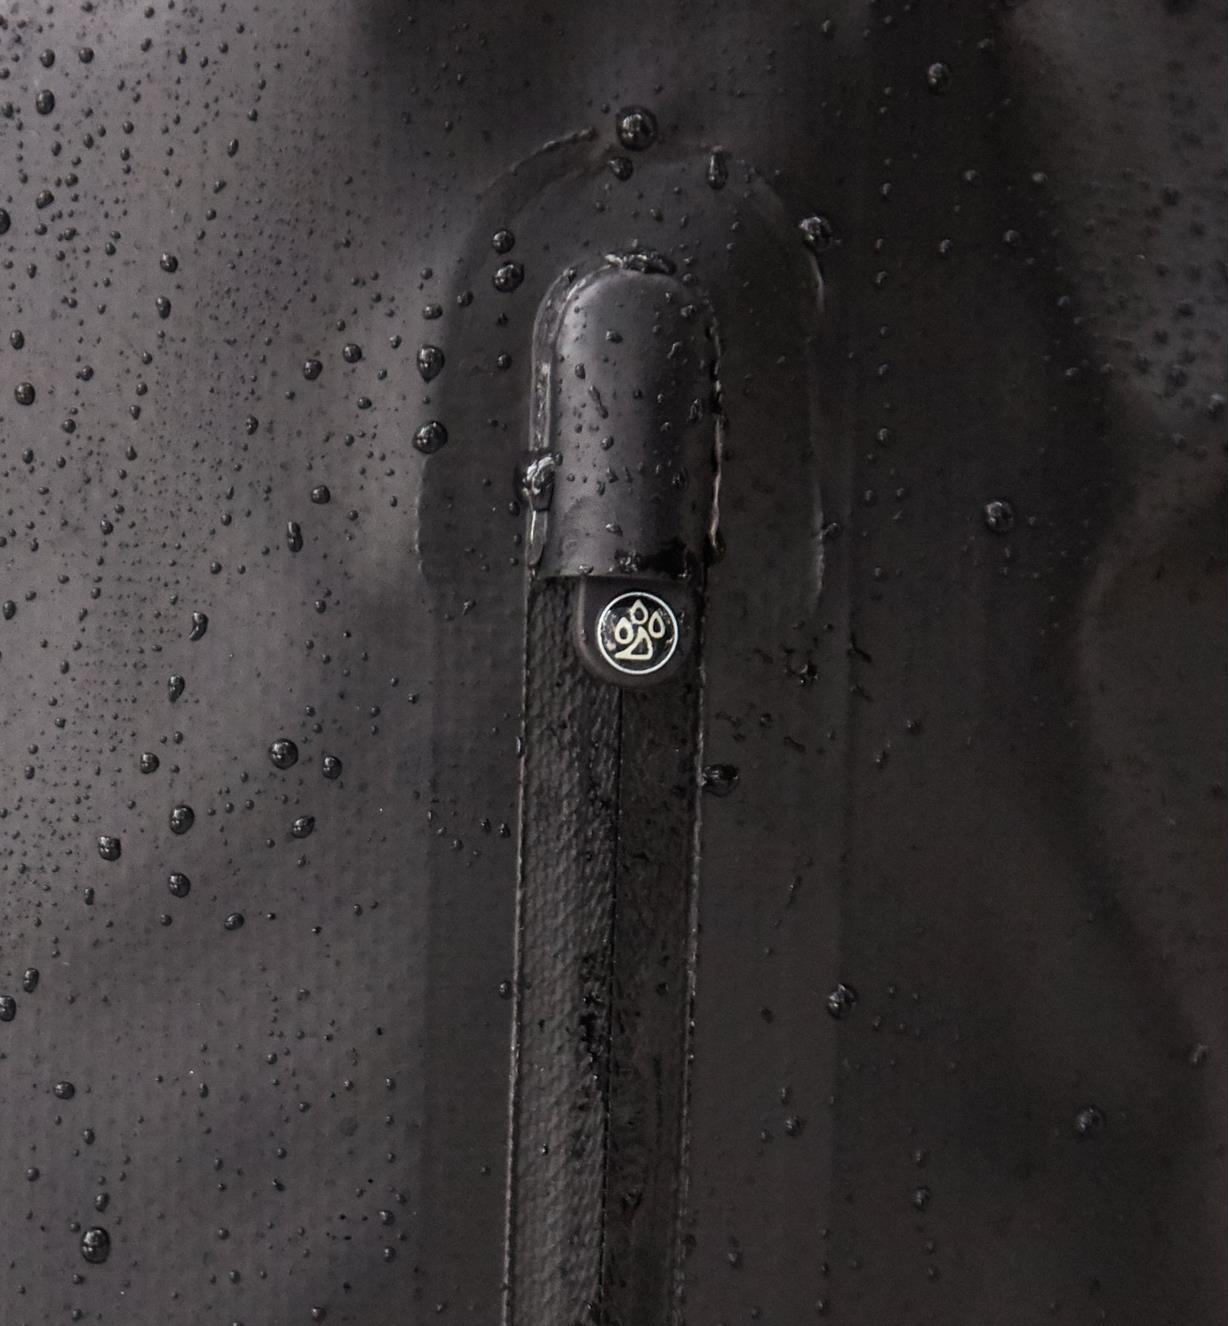 Curseur dissimulé sous le couvre-curseur pour empêcher l'eau de s'infiltrer dans le sac à dos étanche par la fermeture à glissière de la poche extérieure